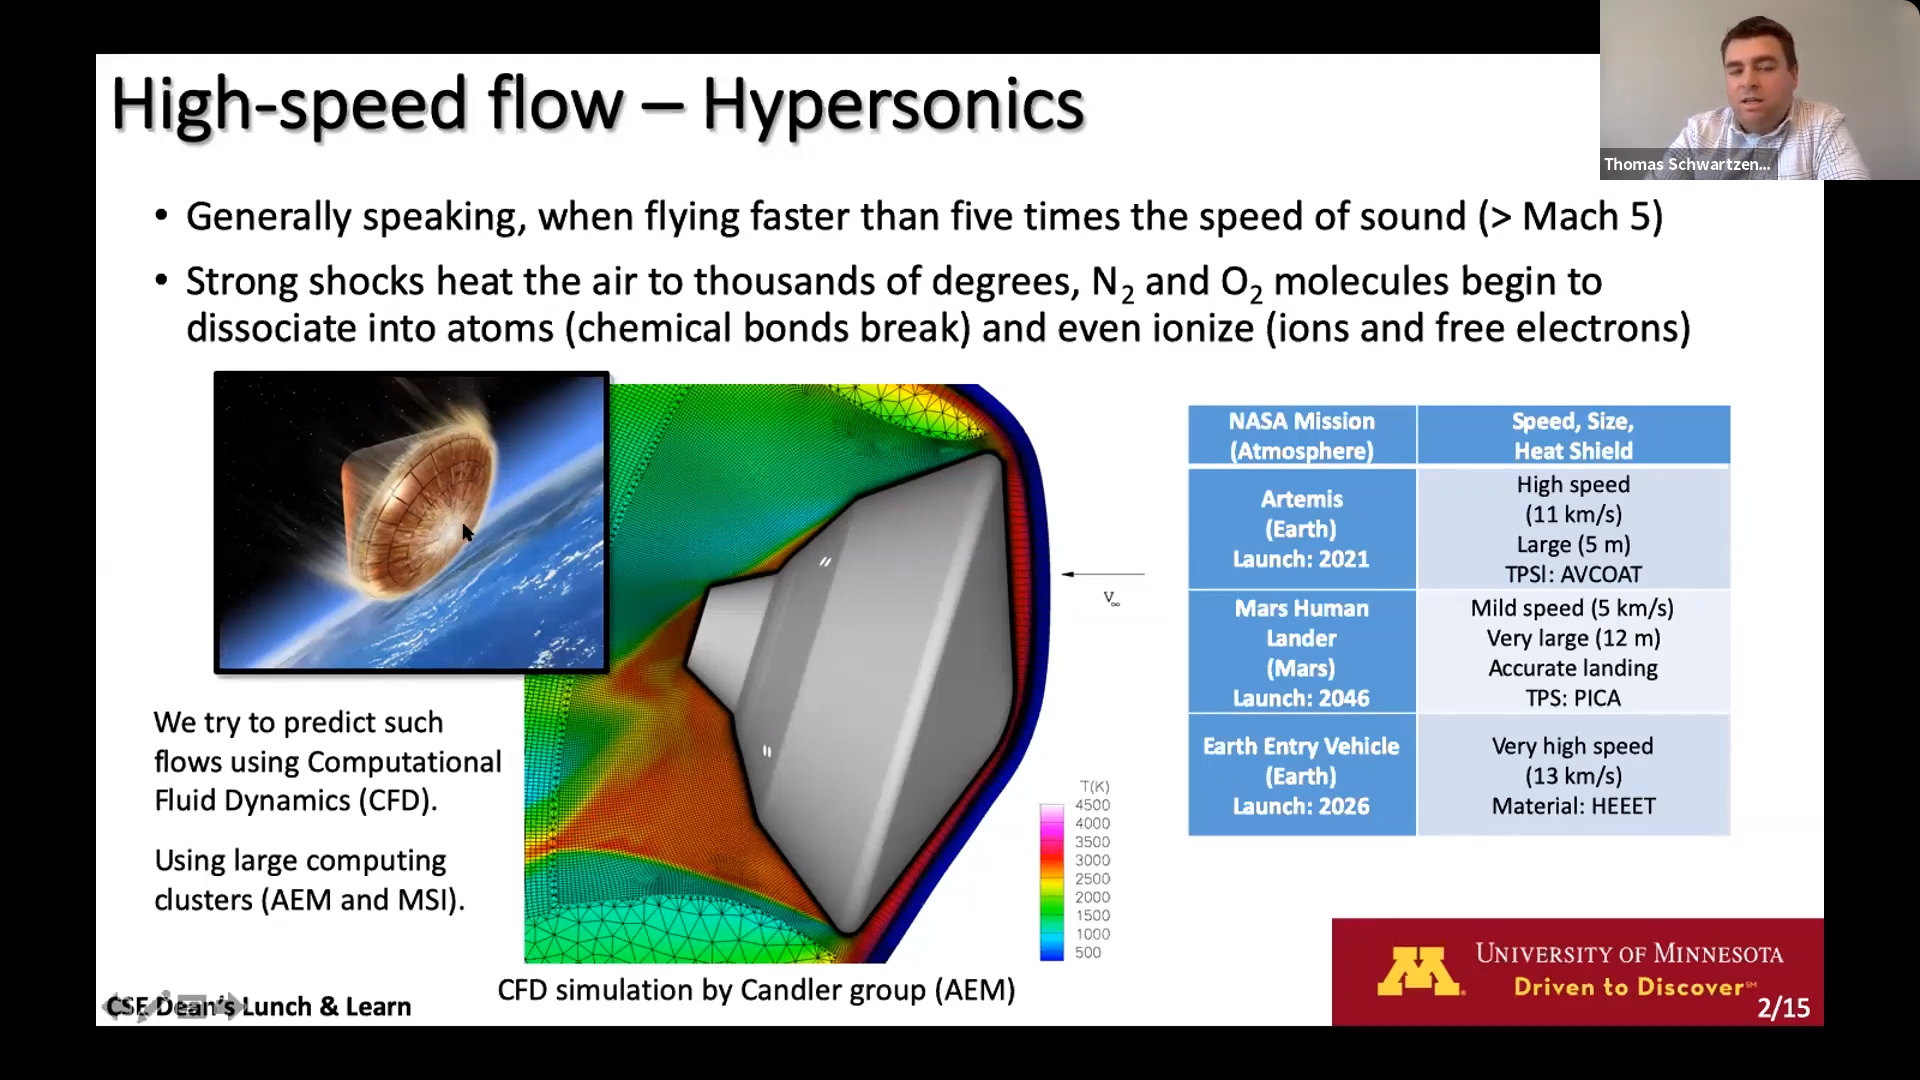 Schwartzentruber hypersonics slide